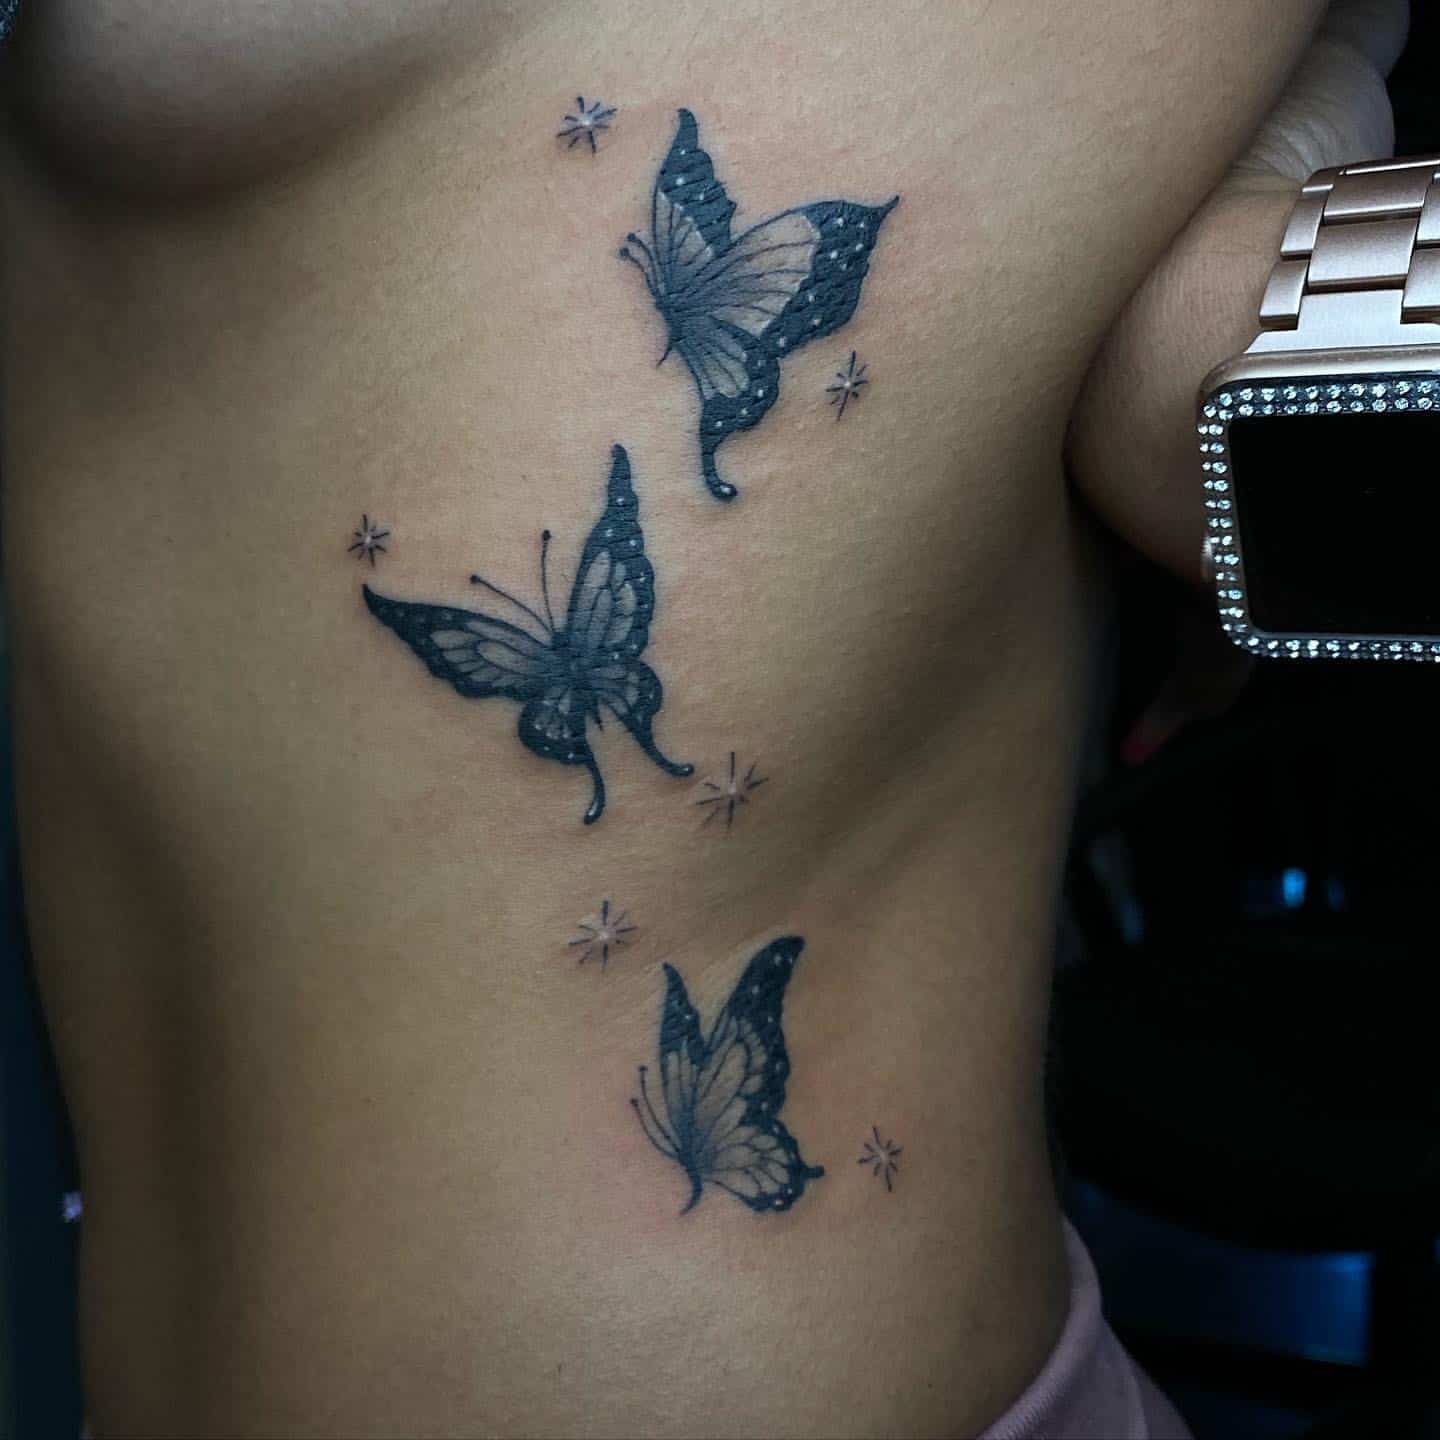 Butterfly side tattoo 2